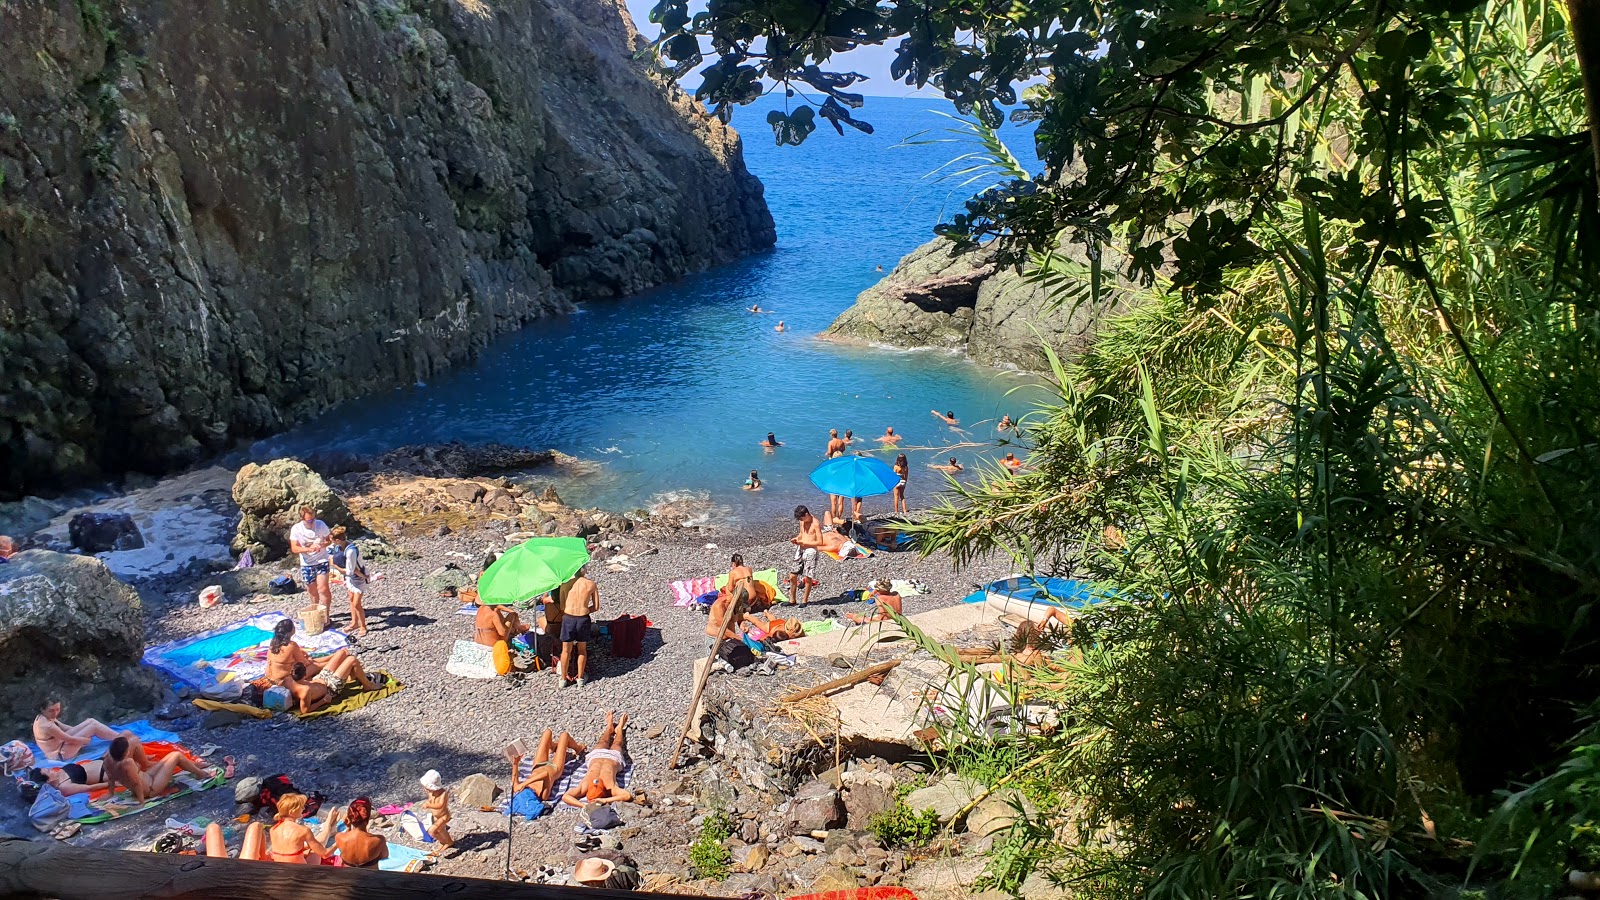 Valokuva Spiaggia di Porto Pidocchioista. pinnalla sininen puhdas vesi:n kanssa